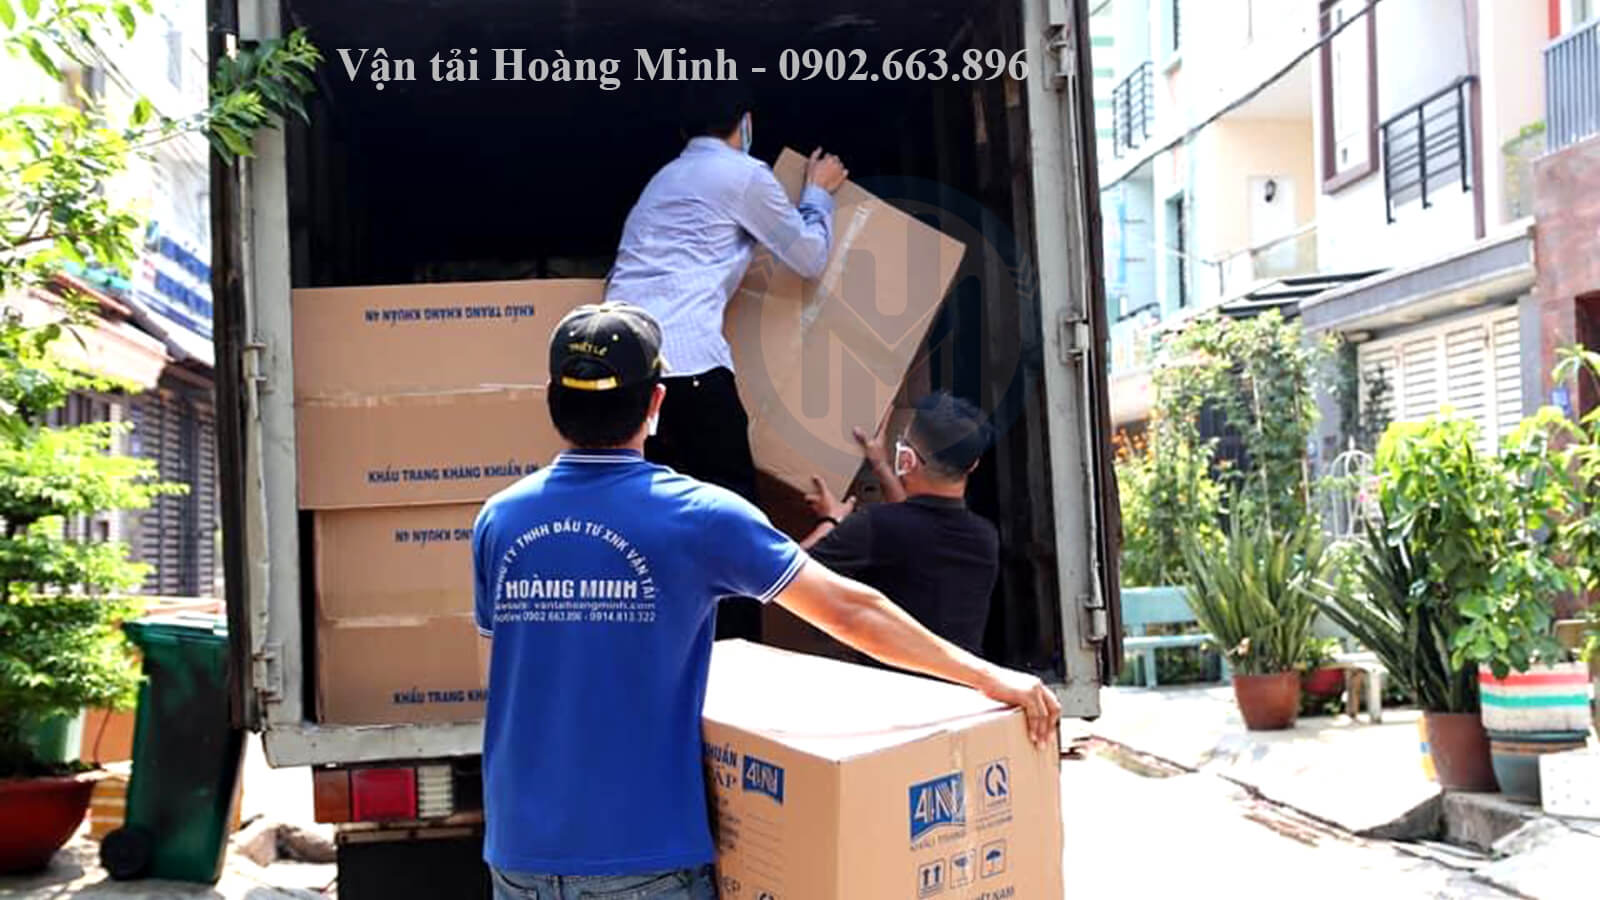 Chọn thuê xe tải vận chuyển hàng hóa Quận Tân Phú của chúng tôi, bạn sẽ nhận được lợi ích gì?